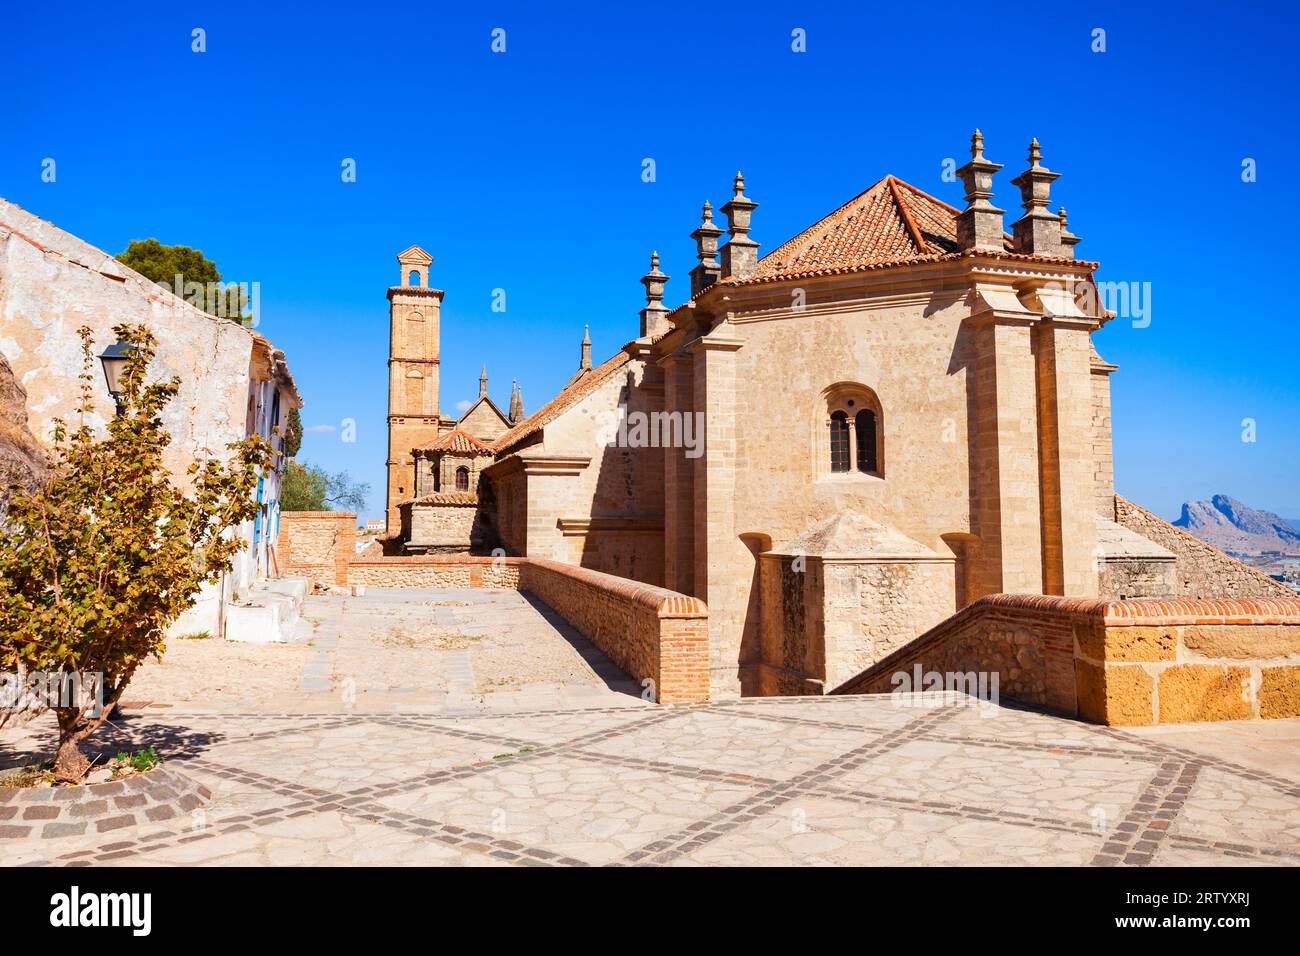 Collégiale royale de Santa Maria la Mayor à Antequera. Antequera est une ville de la province de Malaga, la communauté d'Andalousie en Espagne. Banque D'Images